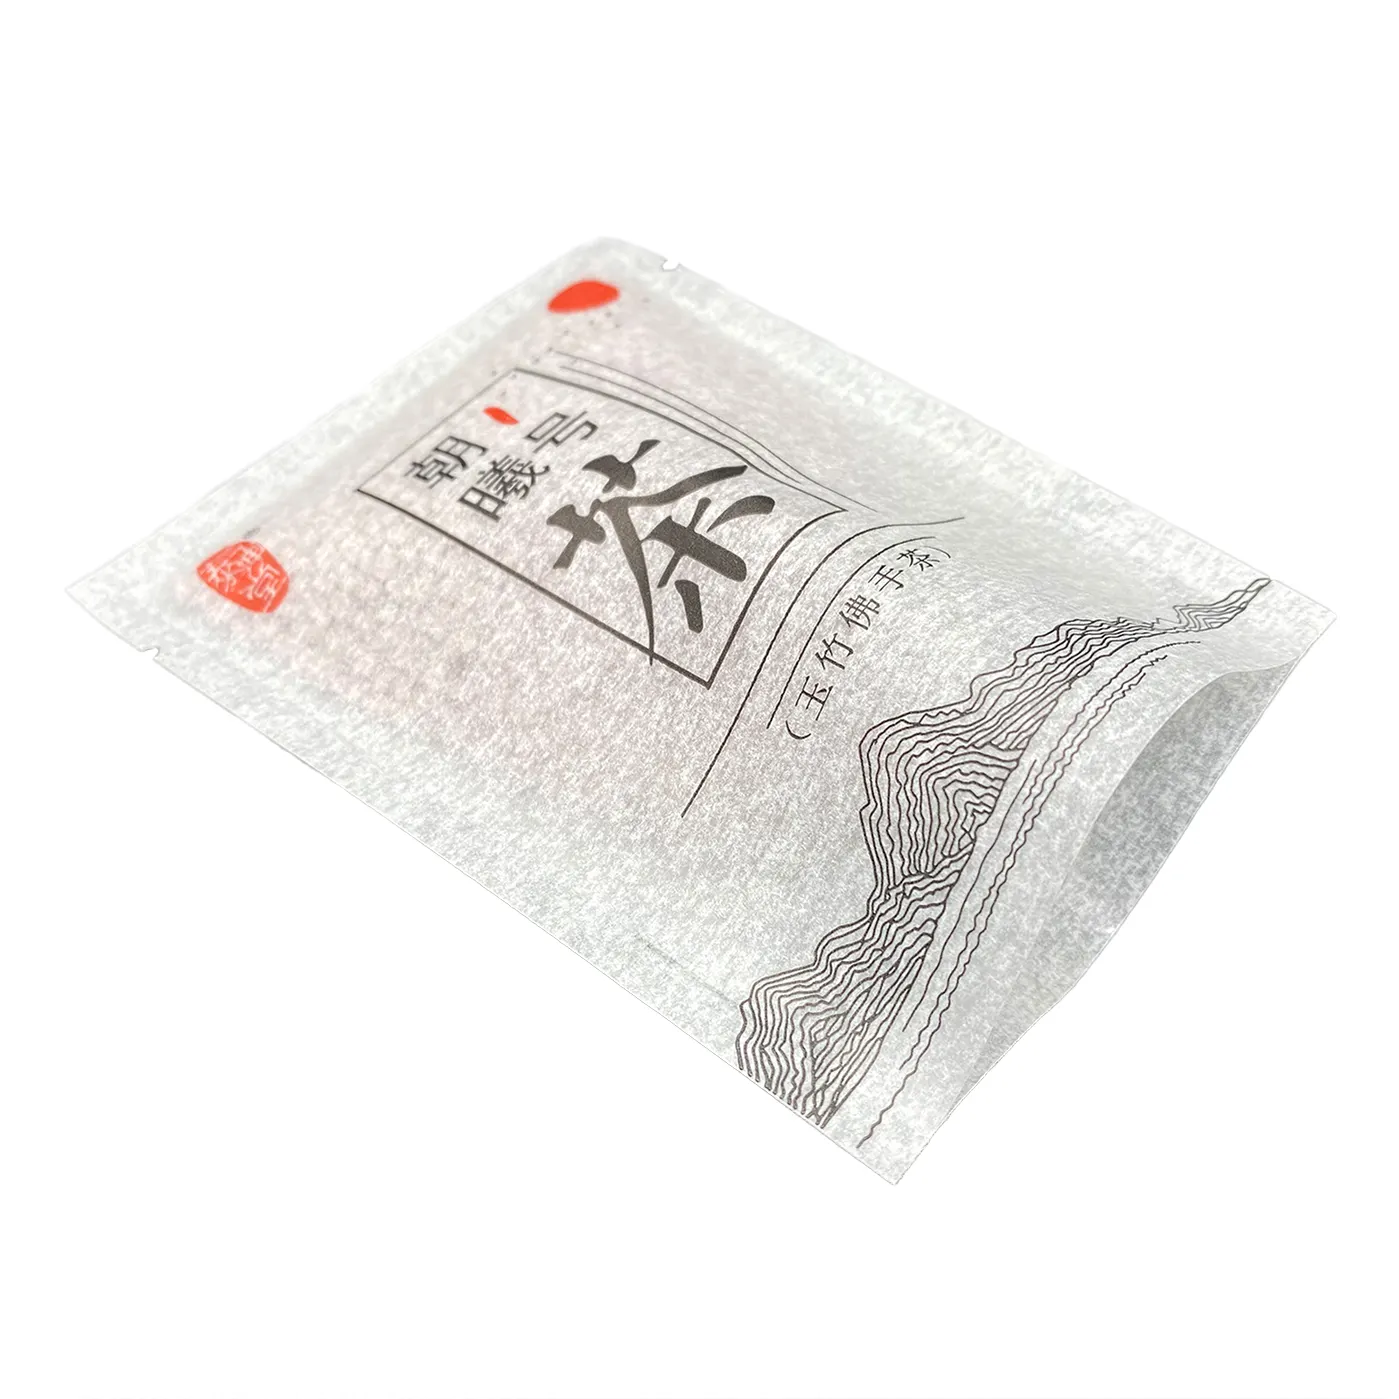 OEM индивидуальный принт, маленькая чайная саше, ламинированная салфетка, пакет для упаковки образцов